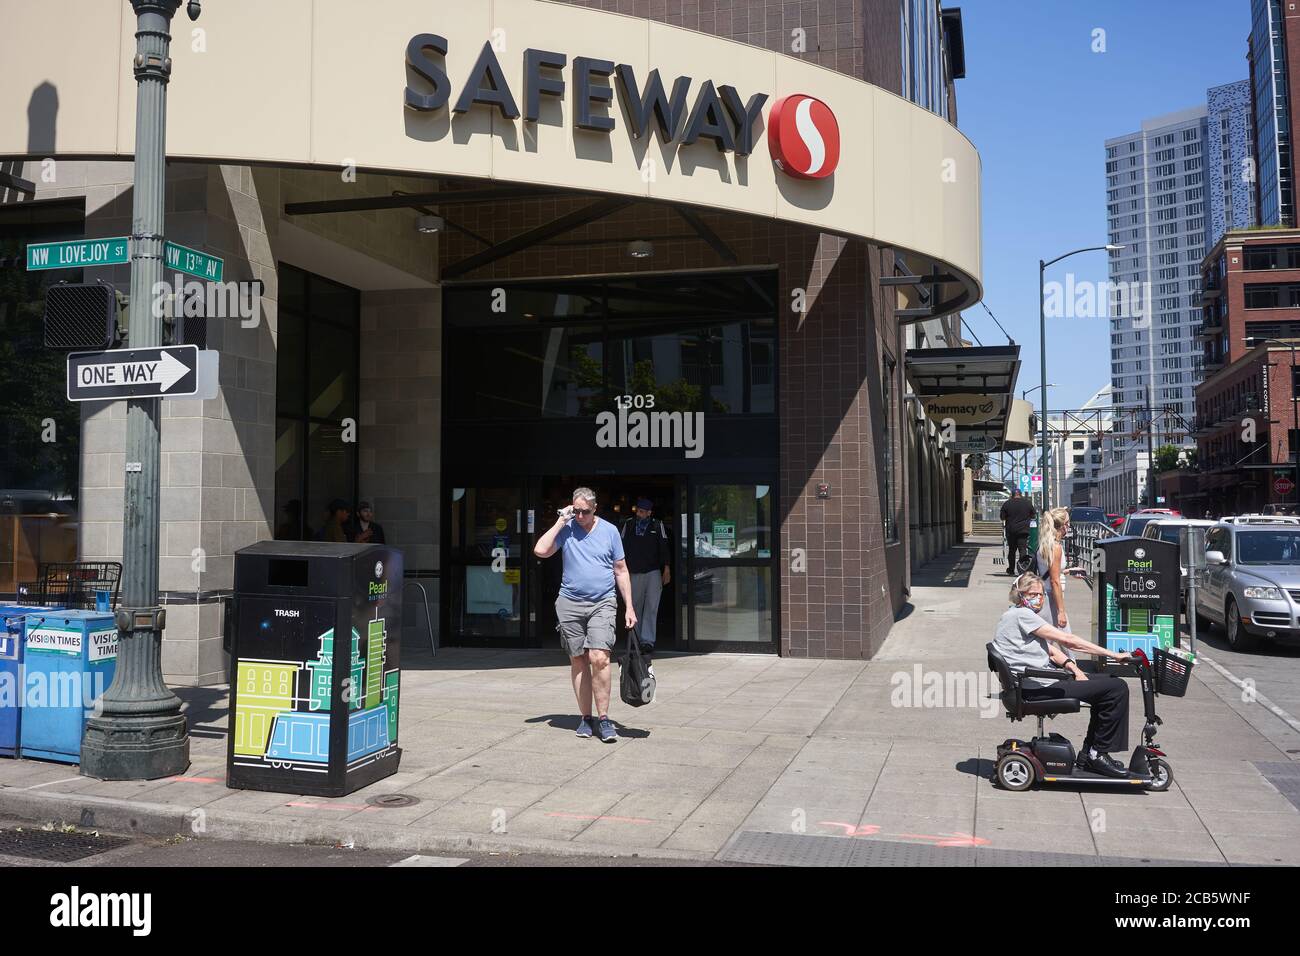 Ein Safeway Supermarkt im Pearl District in Portland, Oregon, am Mittwoch, 5. August 2020, während eines Pandemiesommers. Stockfoto